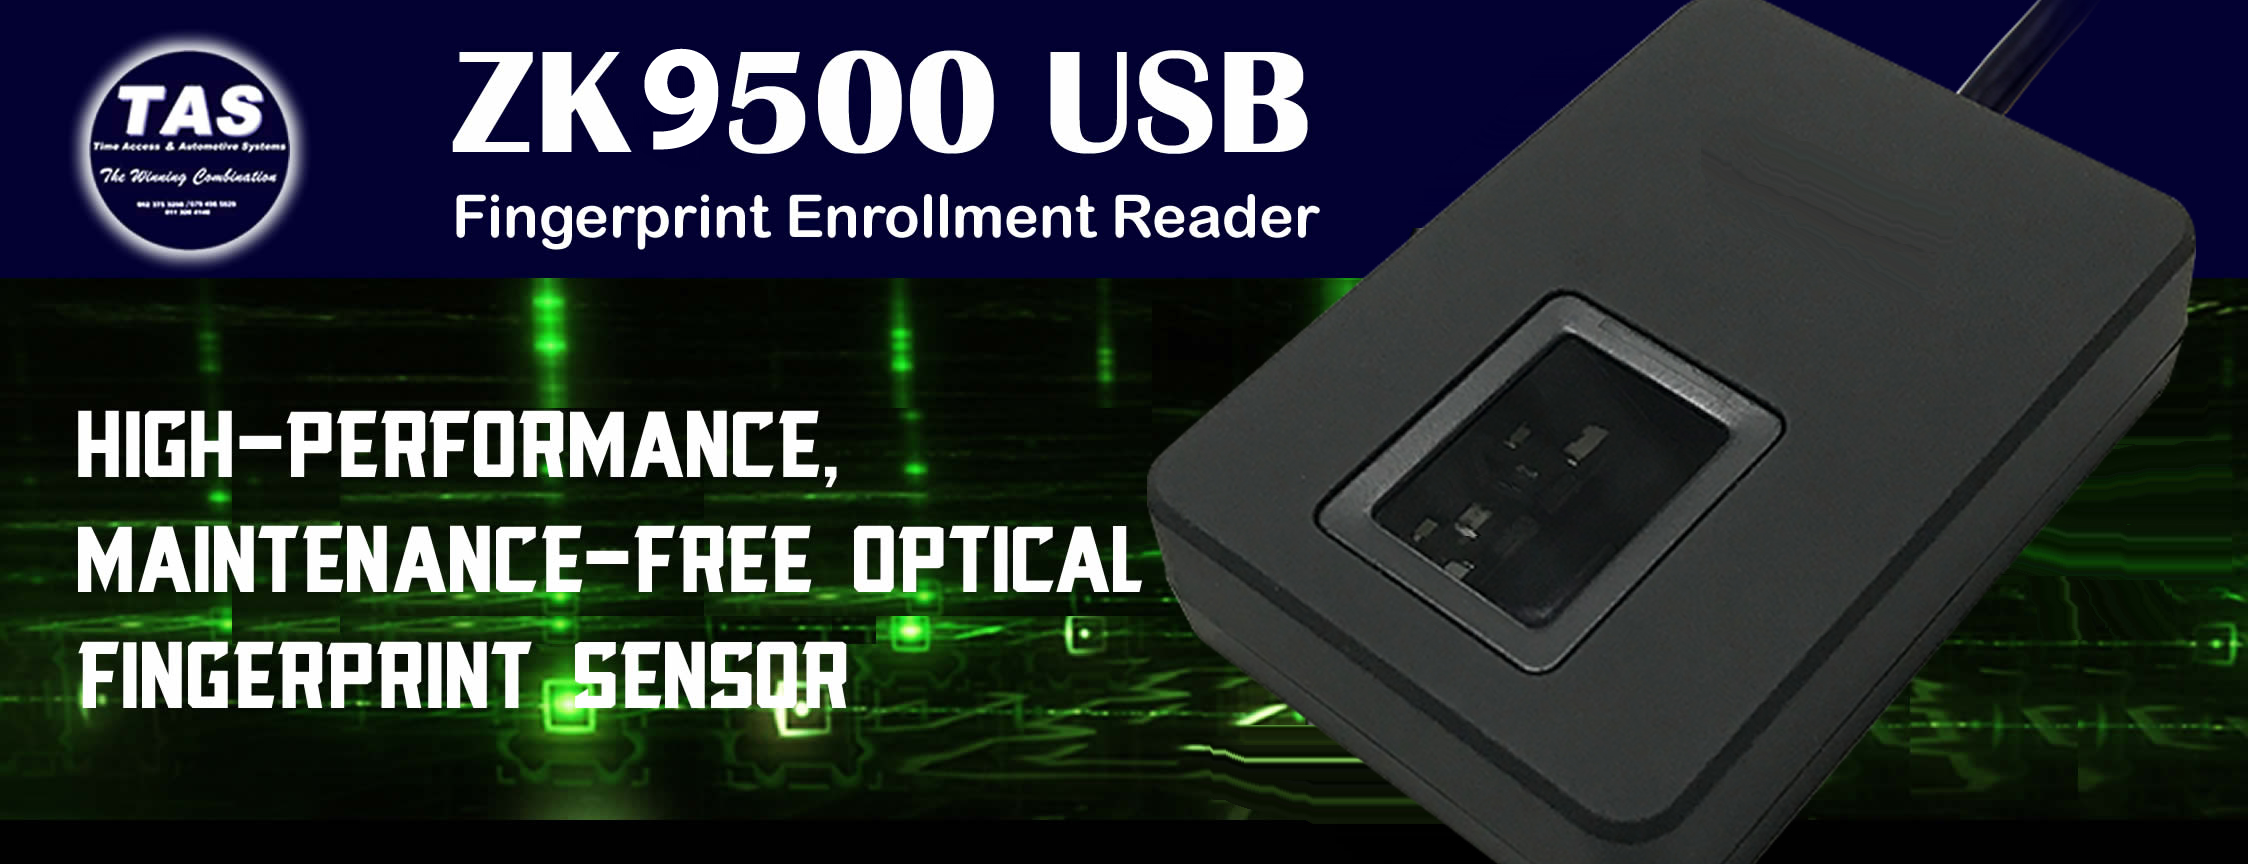 4500-usb-fingerprint-enrollment-reader